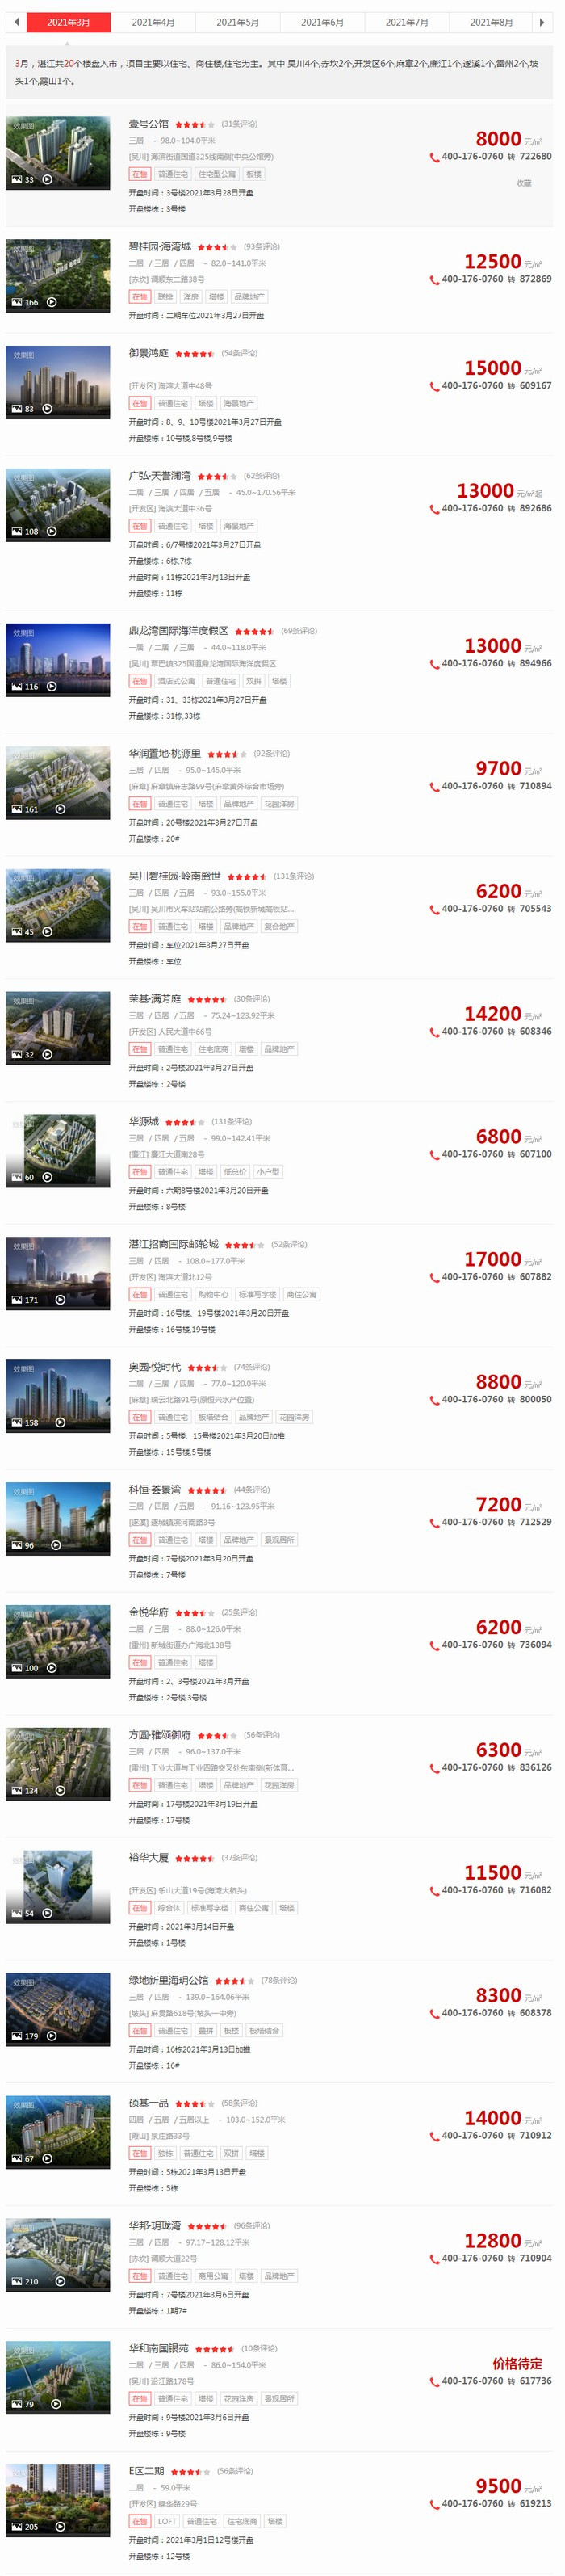 3月湛江楼市报告：住宅均价10762元/㎡ 环比跌0.03%